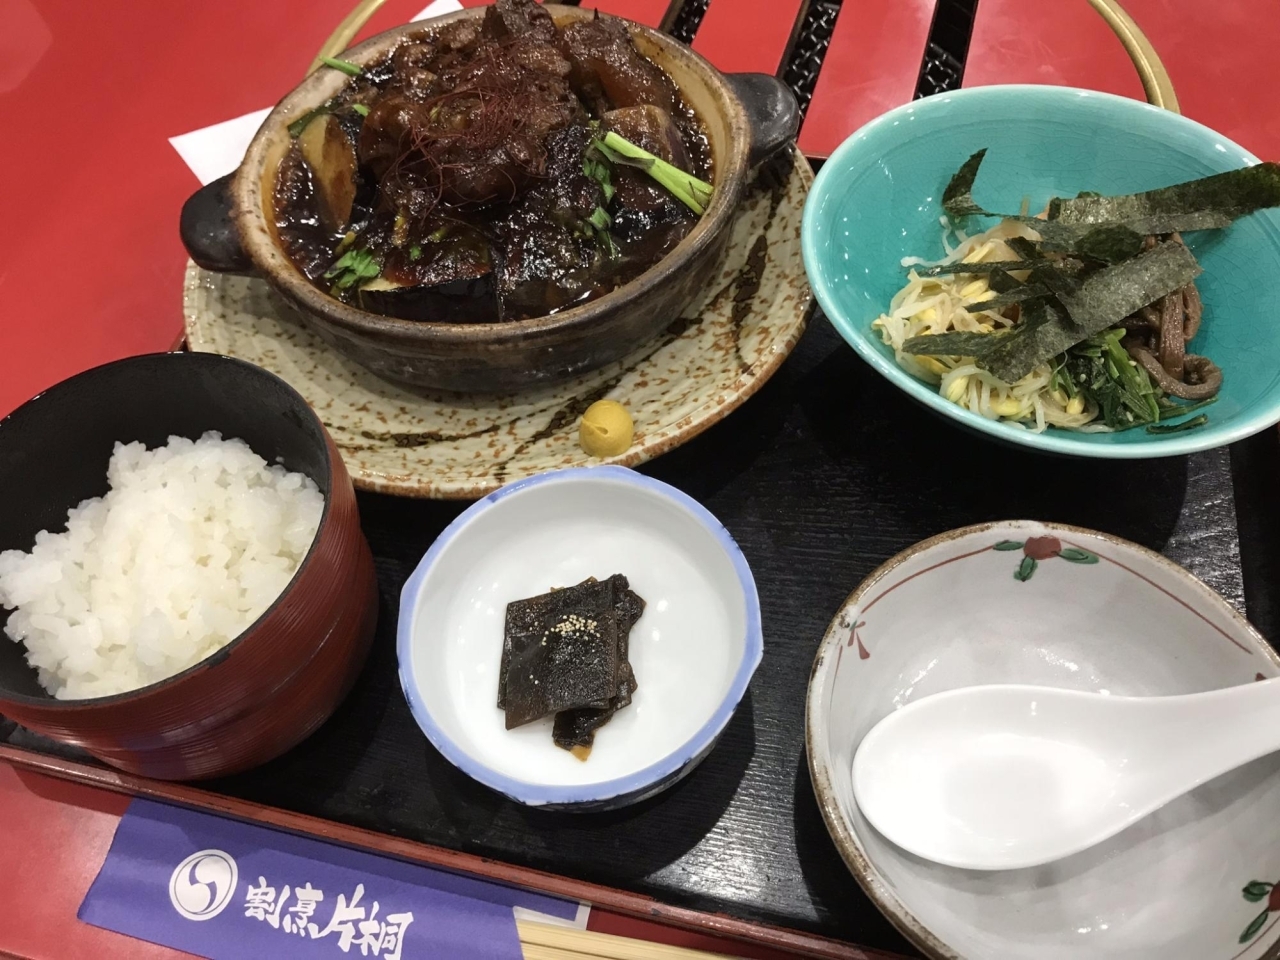 割烹片桐 で 御膳メニューのランチを満喫 元町 茨木ランチめぐり まいぷれ 茨木市